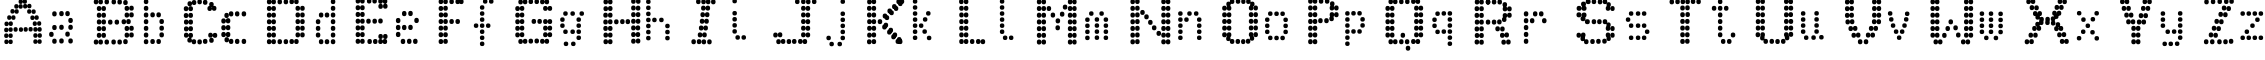 Пример написания английского алфавита шрифтом J_EKR_B_N